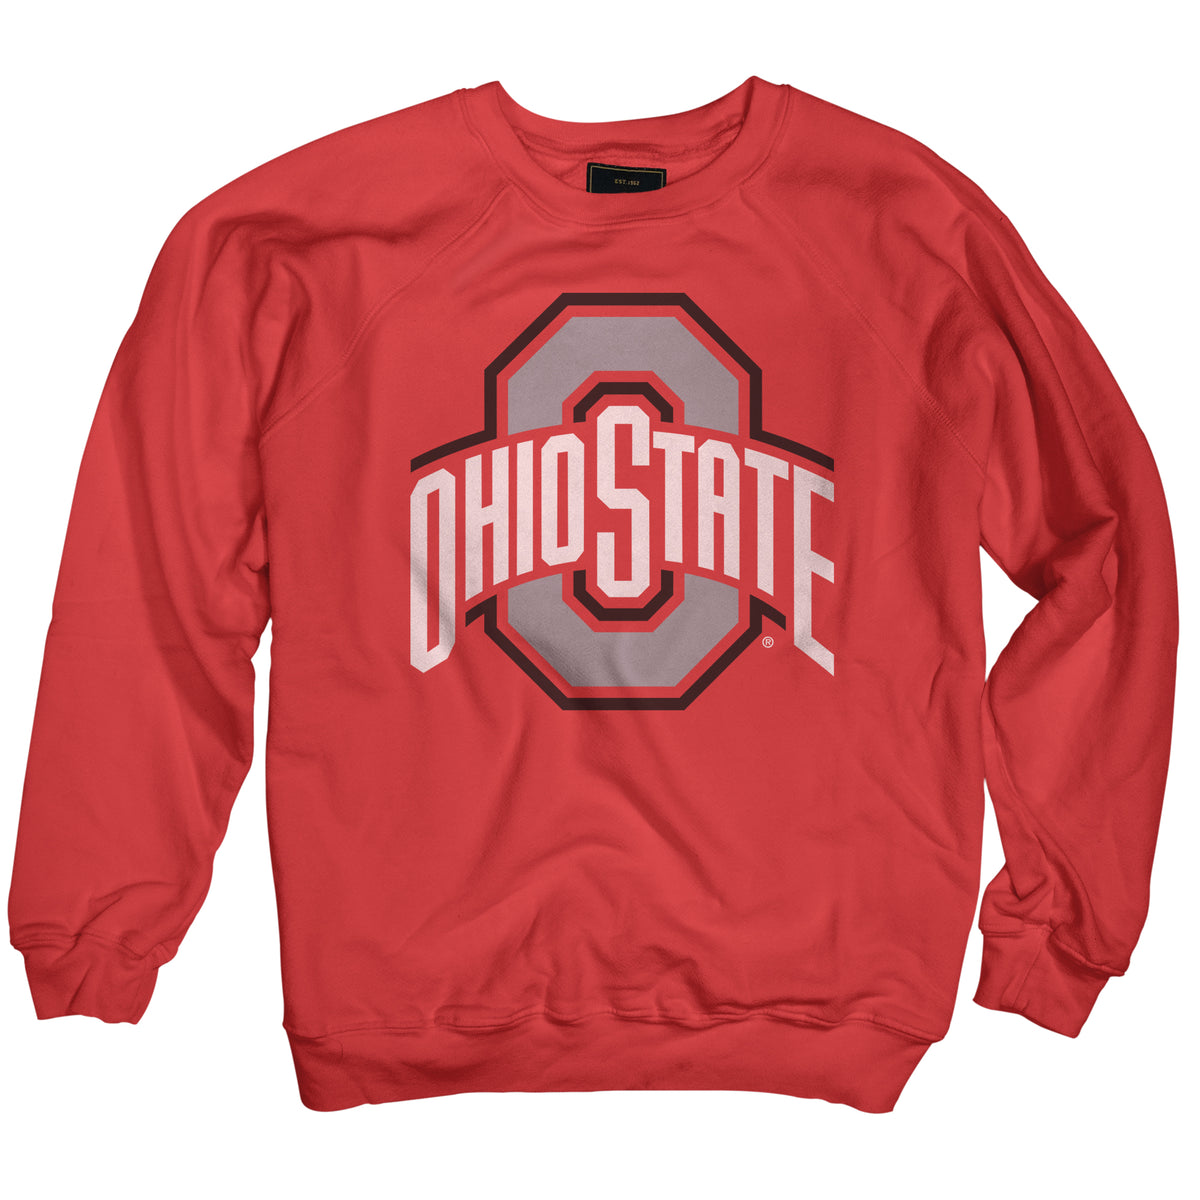 Ohio State Buckeyes Black Label Sweatshirt